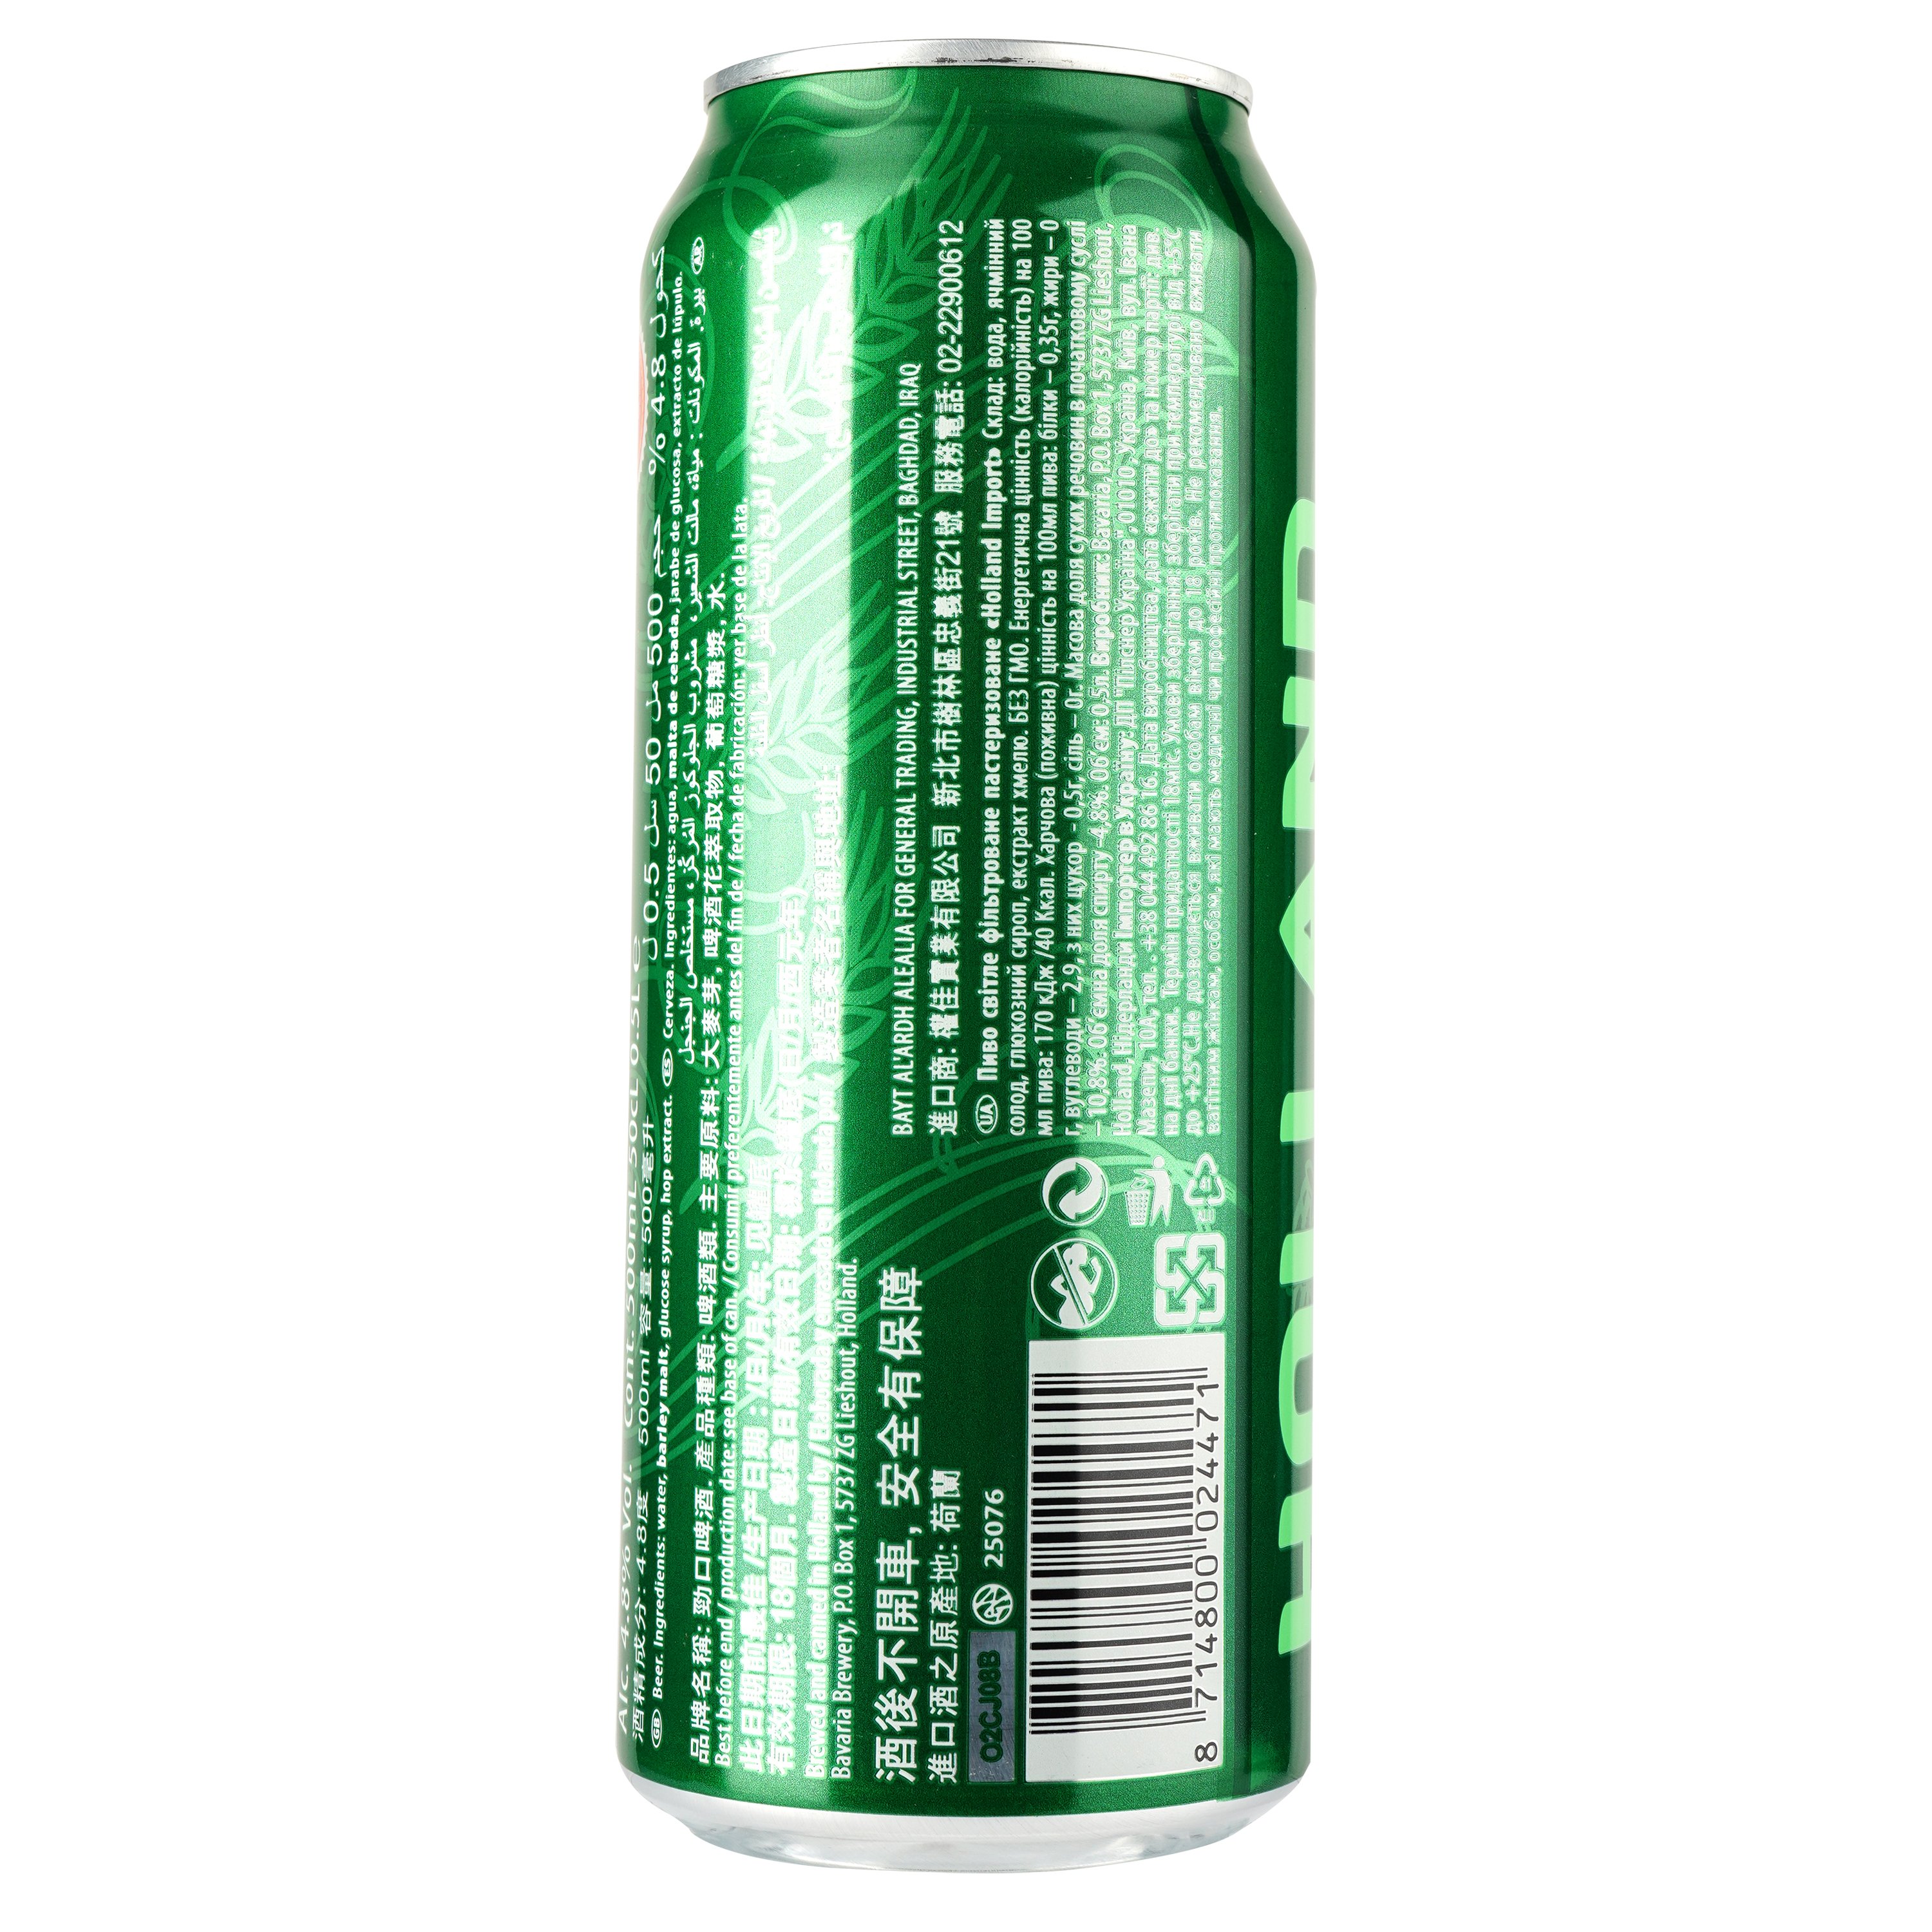 Пиво Holland Import, светлое, фильтрованное, 4,8%, ж/б, 0,5 л - фото 2